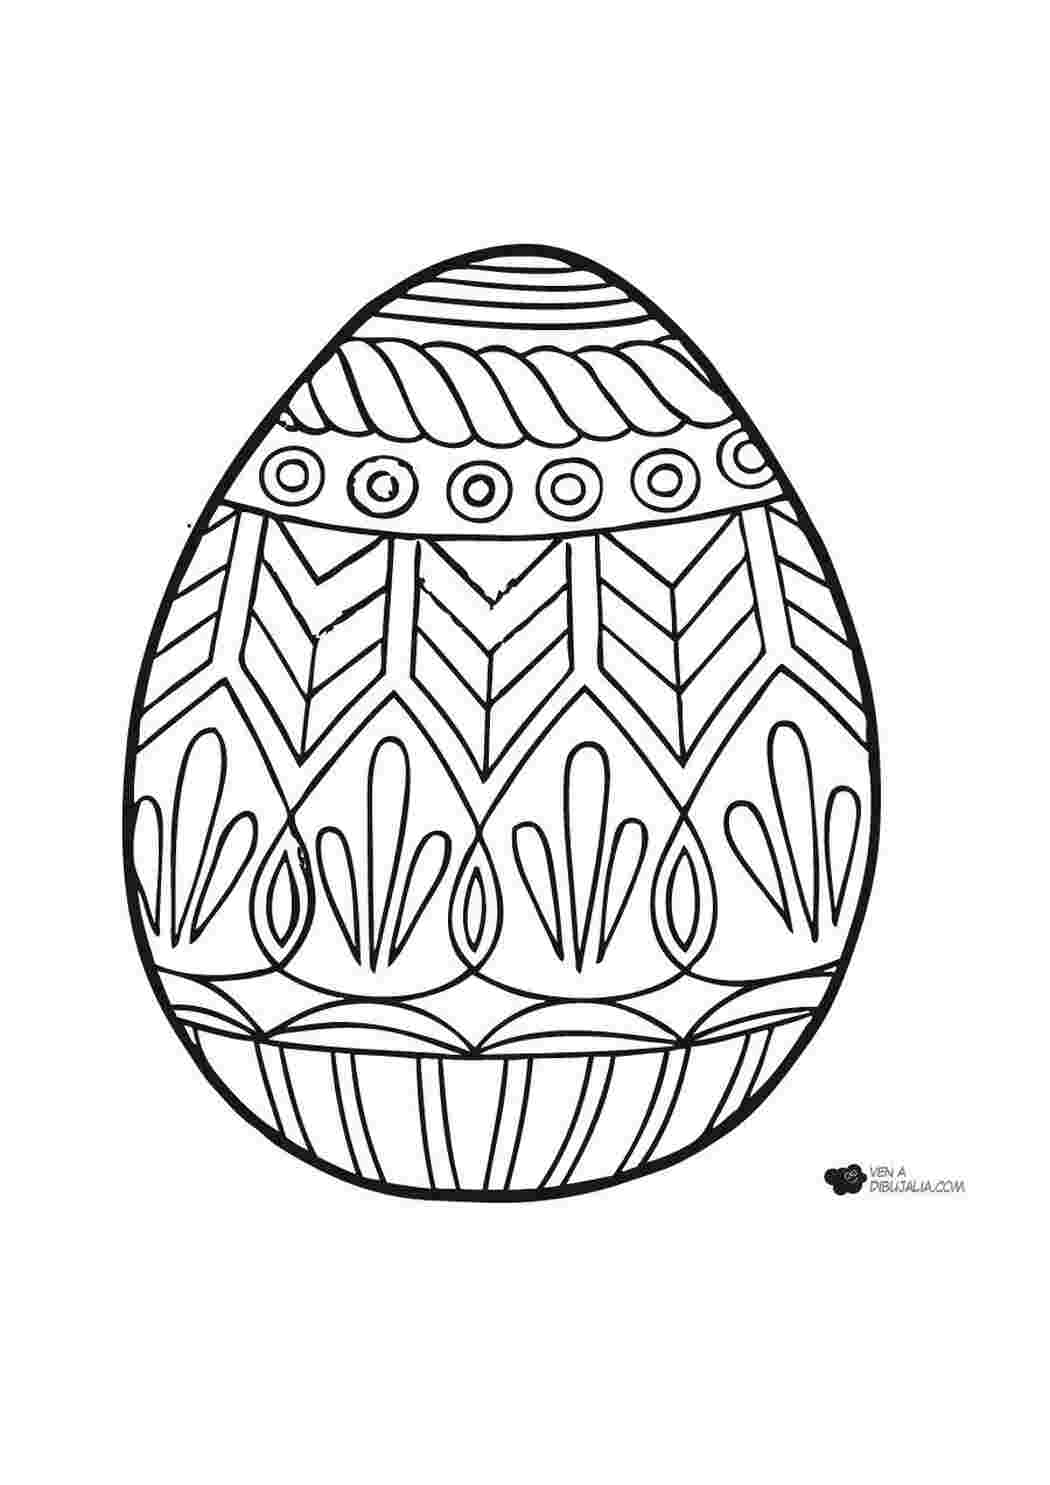 Пасхальное яйцо рисунок для детей. Раскраски пасочных яиц. Пасхальное яйцо раскраска. Пасхальные яйца для раскрашивания. Яйца на Пасху раскраска.